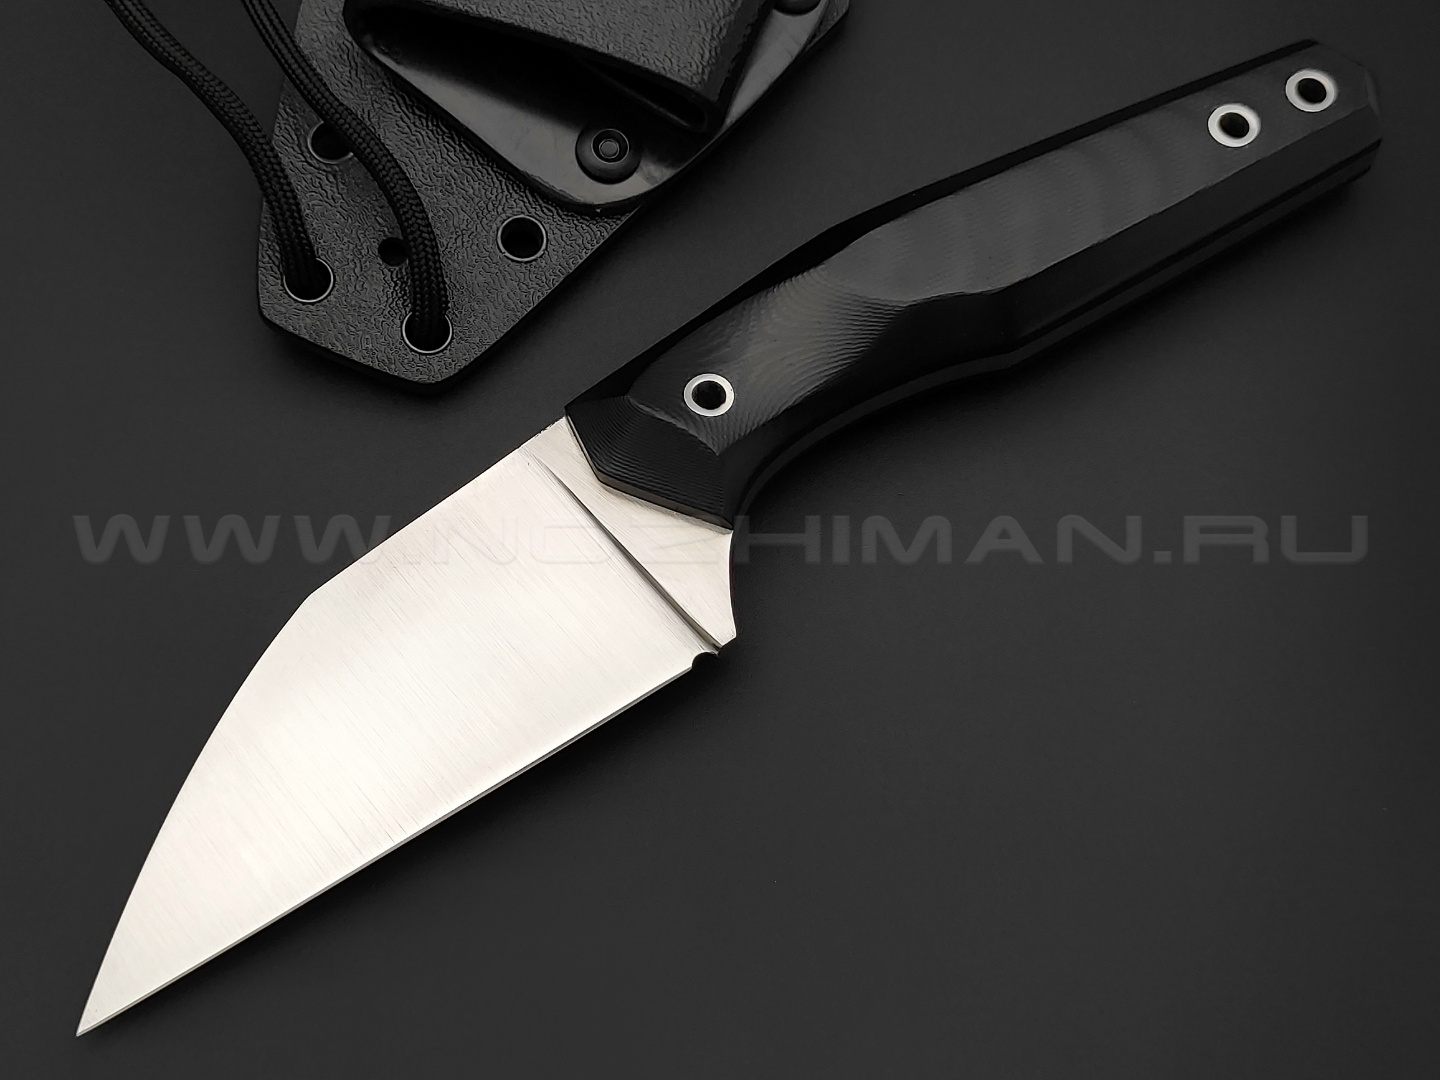 Волчий Век нож "Wharn" сталь M390 WA, рукоять G10 black